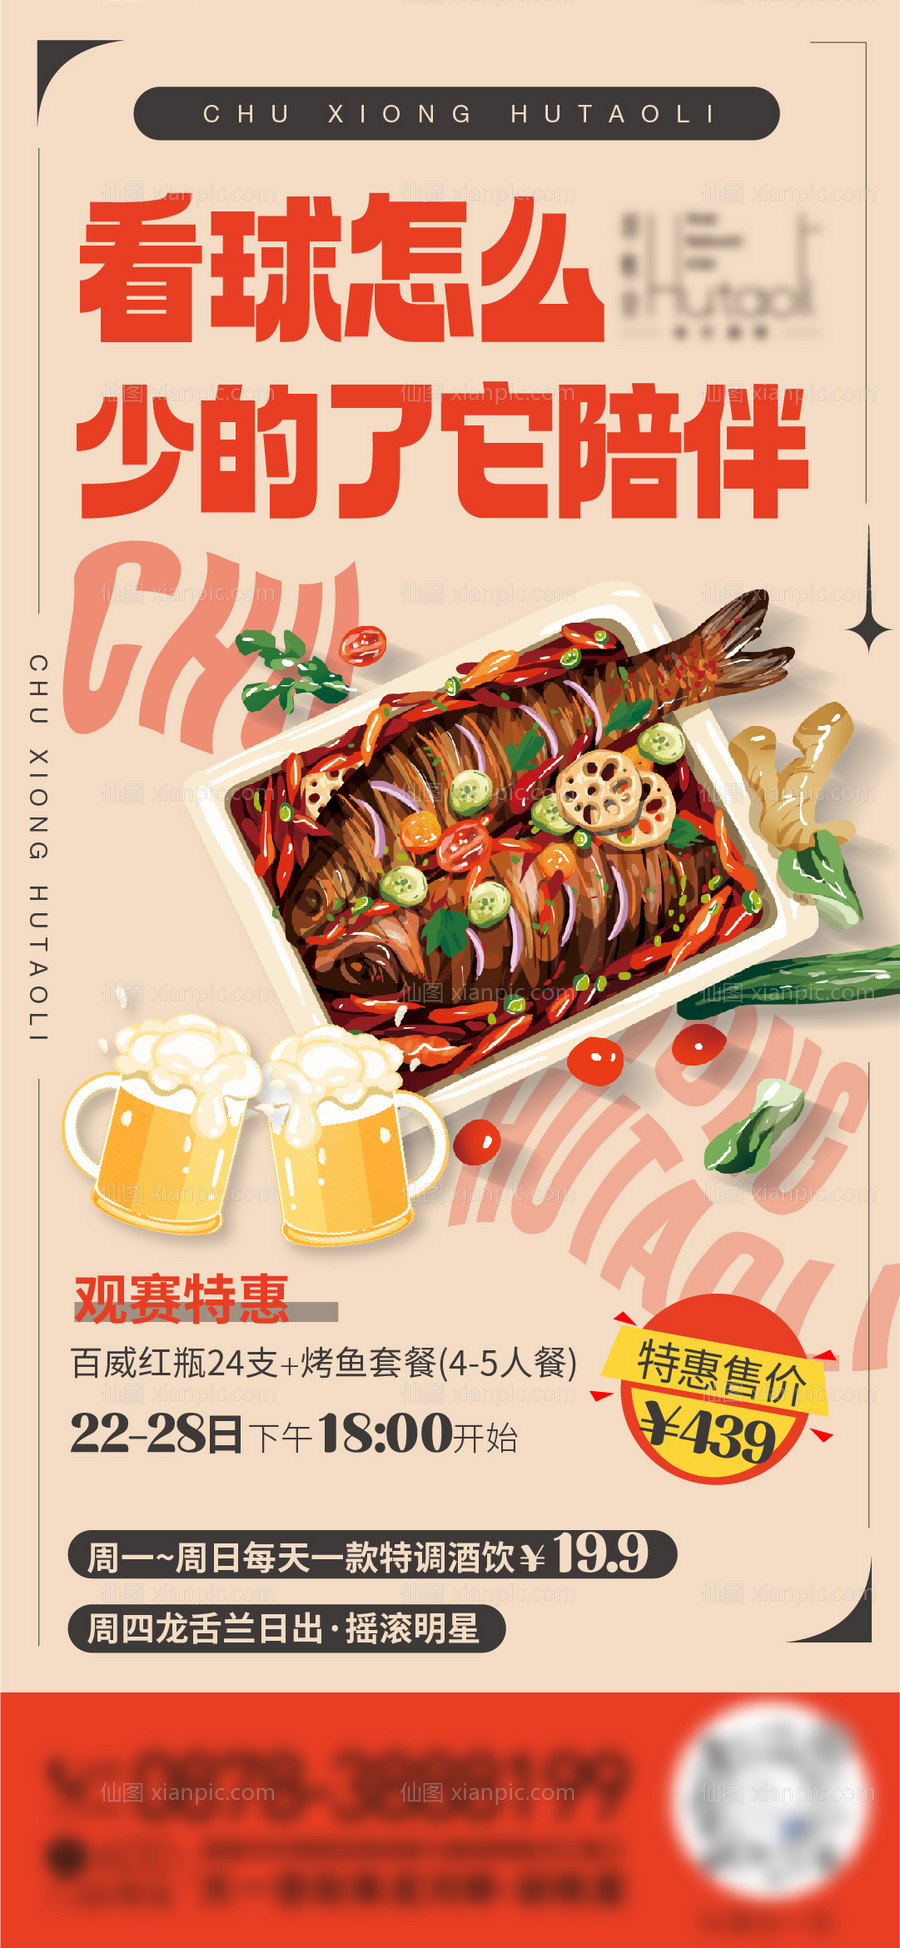 素材乐-烤鱼活动海报